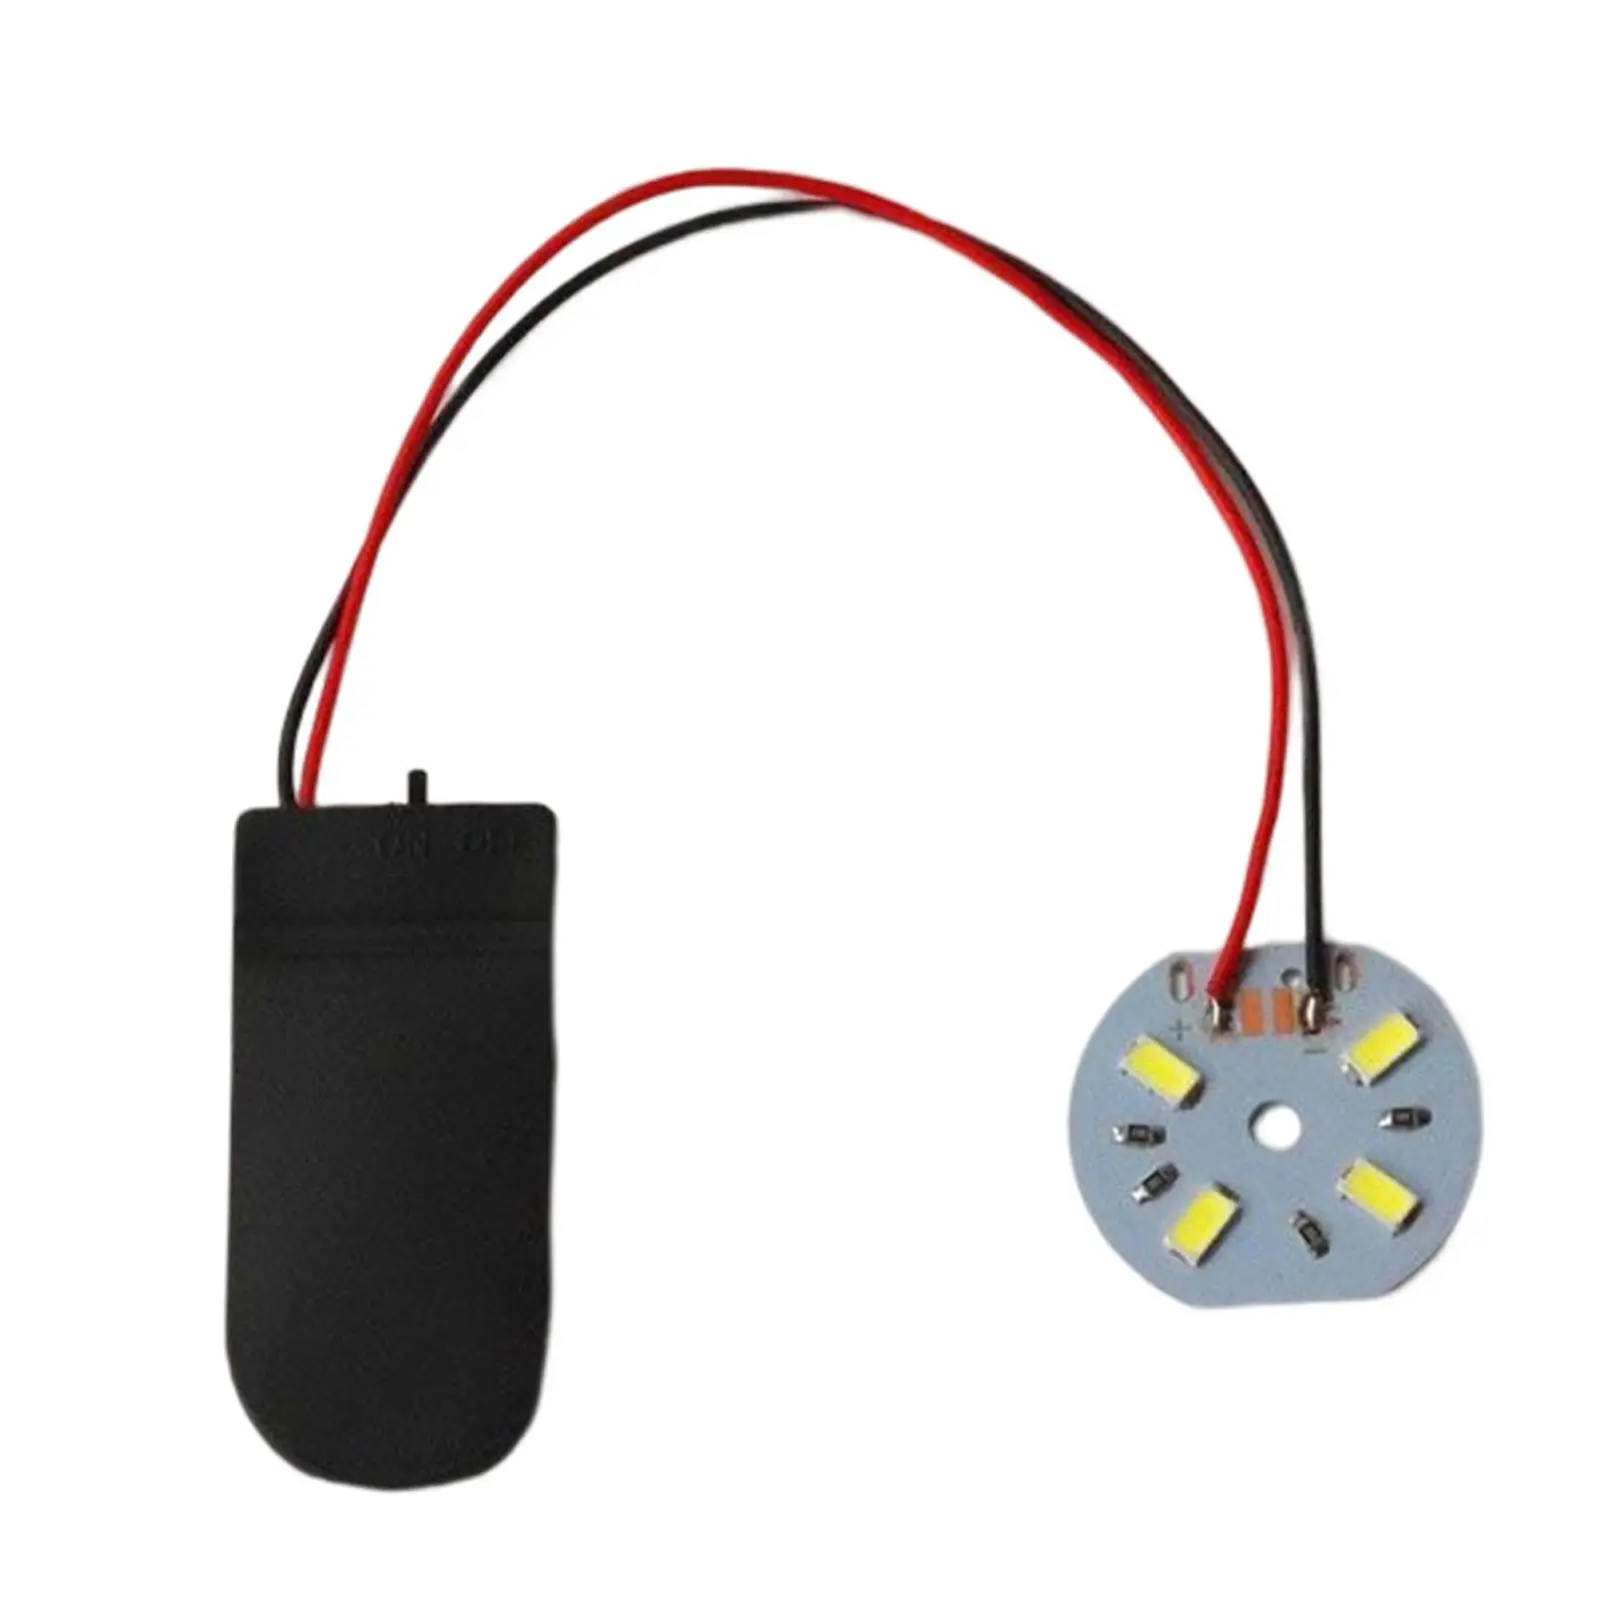 Portable LED Lamp LED Unit DIY Decorative Light Manual Luminous Mini Lighting for Scene Decoration Bedroom Experiment DIY